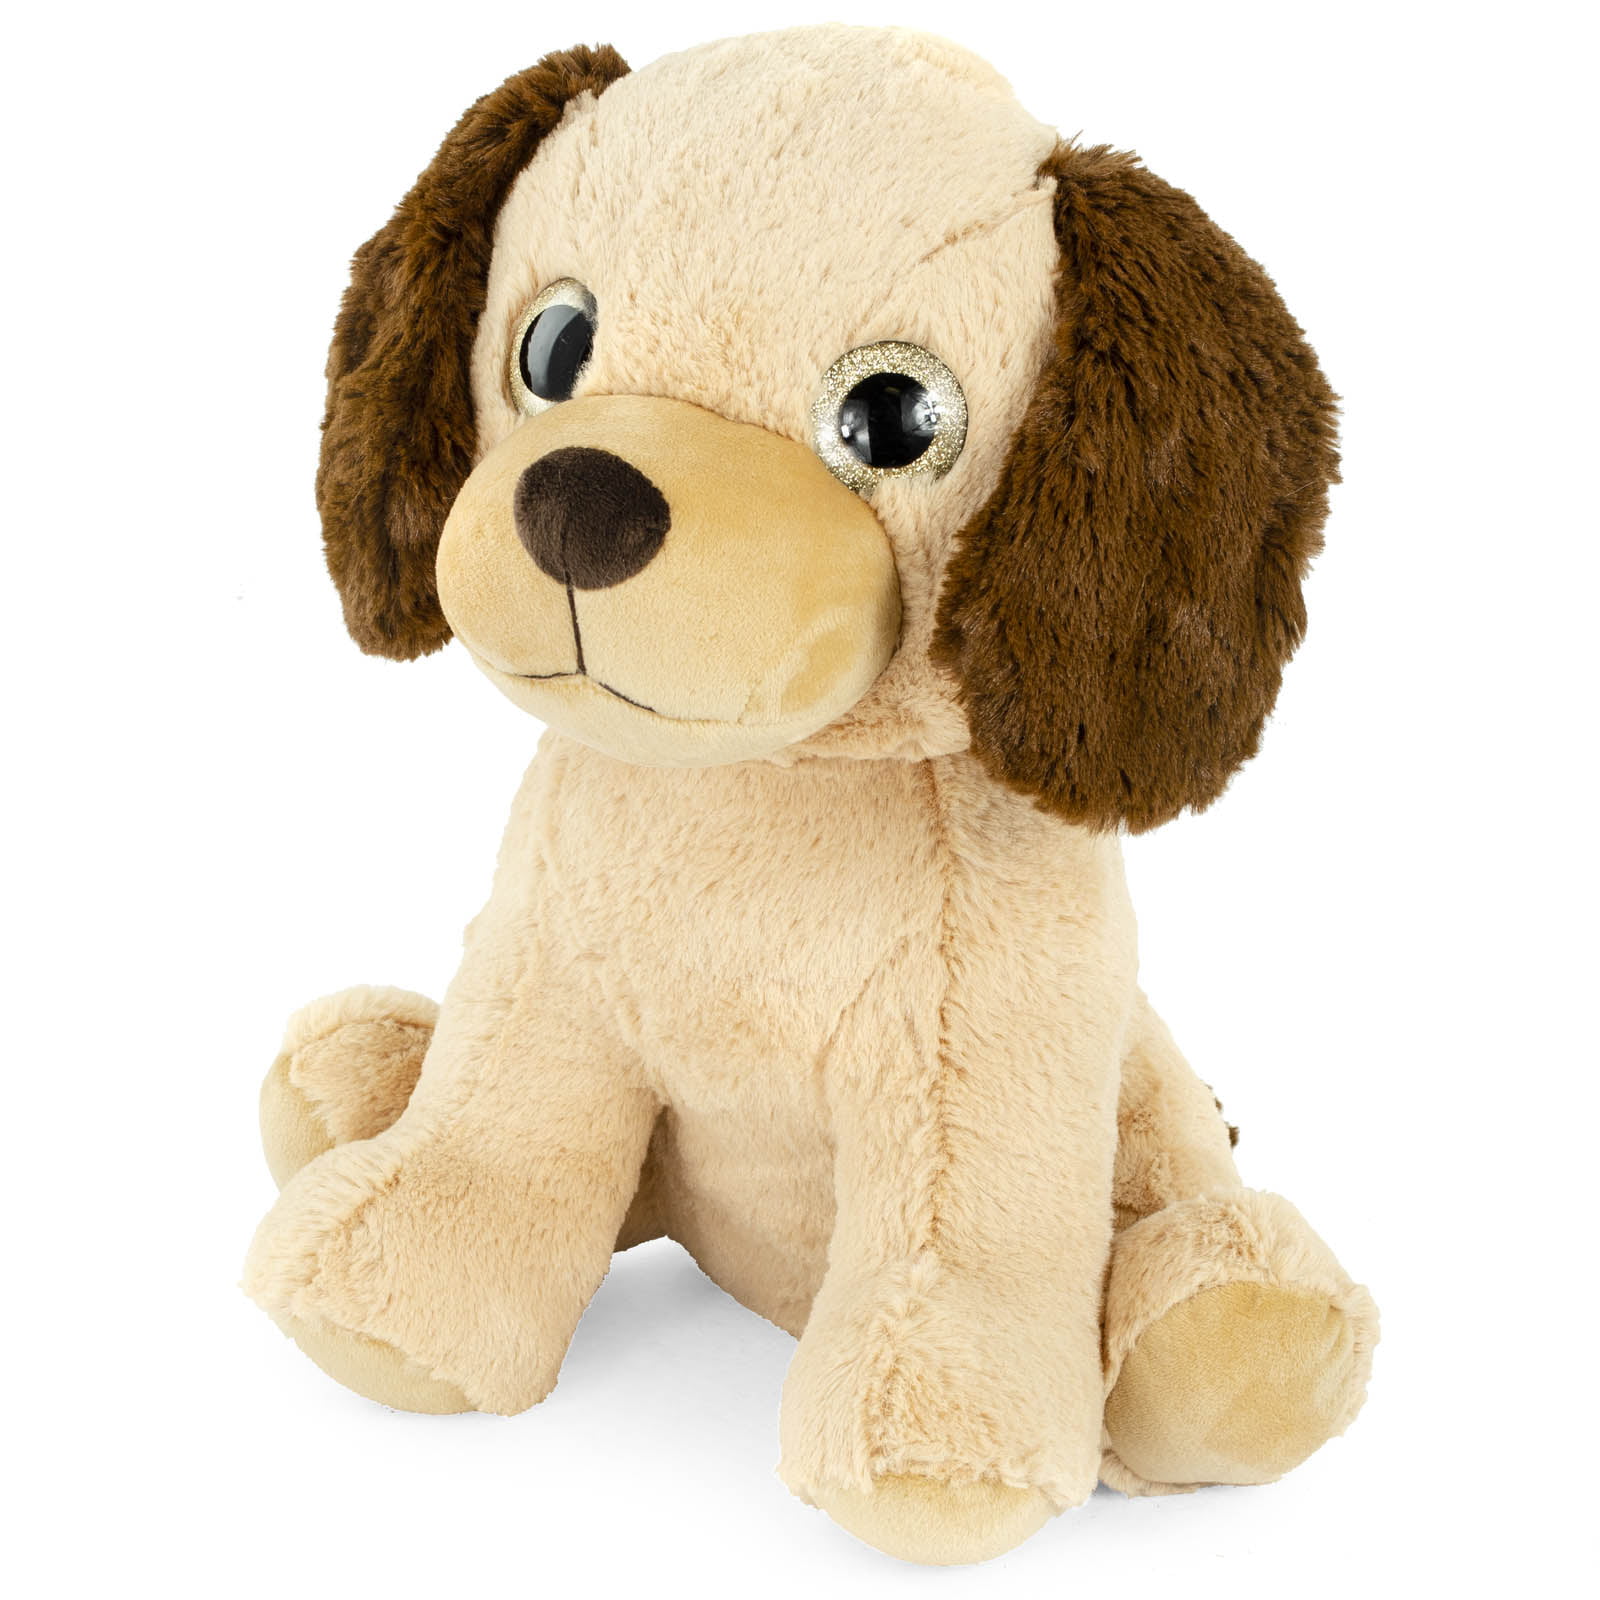 Super Soft Plush Corduroy Cuddle Farm Sitting Dog Stuffed Animal Toy, 14 inch Adorable Farm